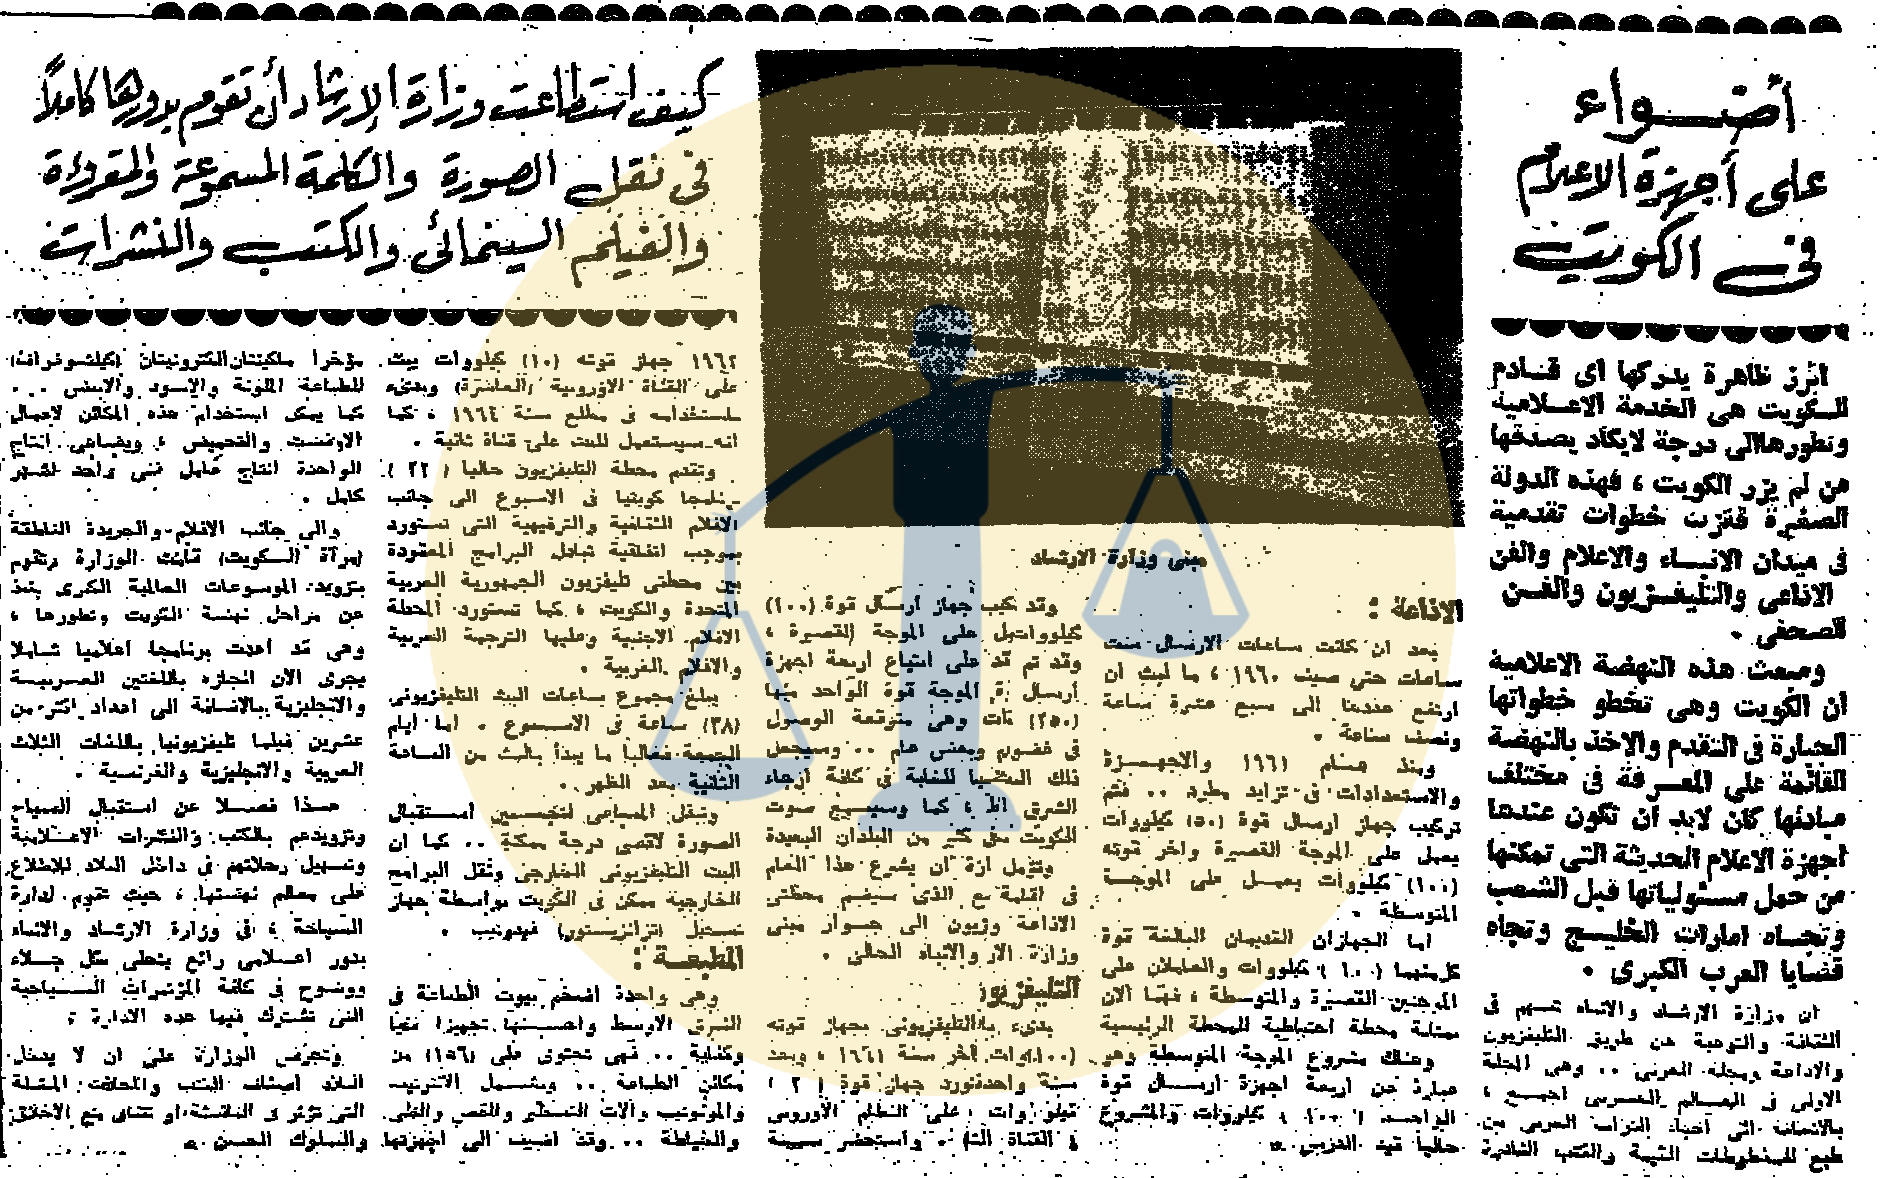 تغطية صحيفة الأهرام لـ وزارة الإعلام الكويتية في ظل تولي الشيخ صباح لها